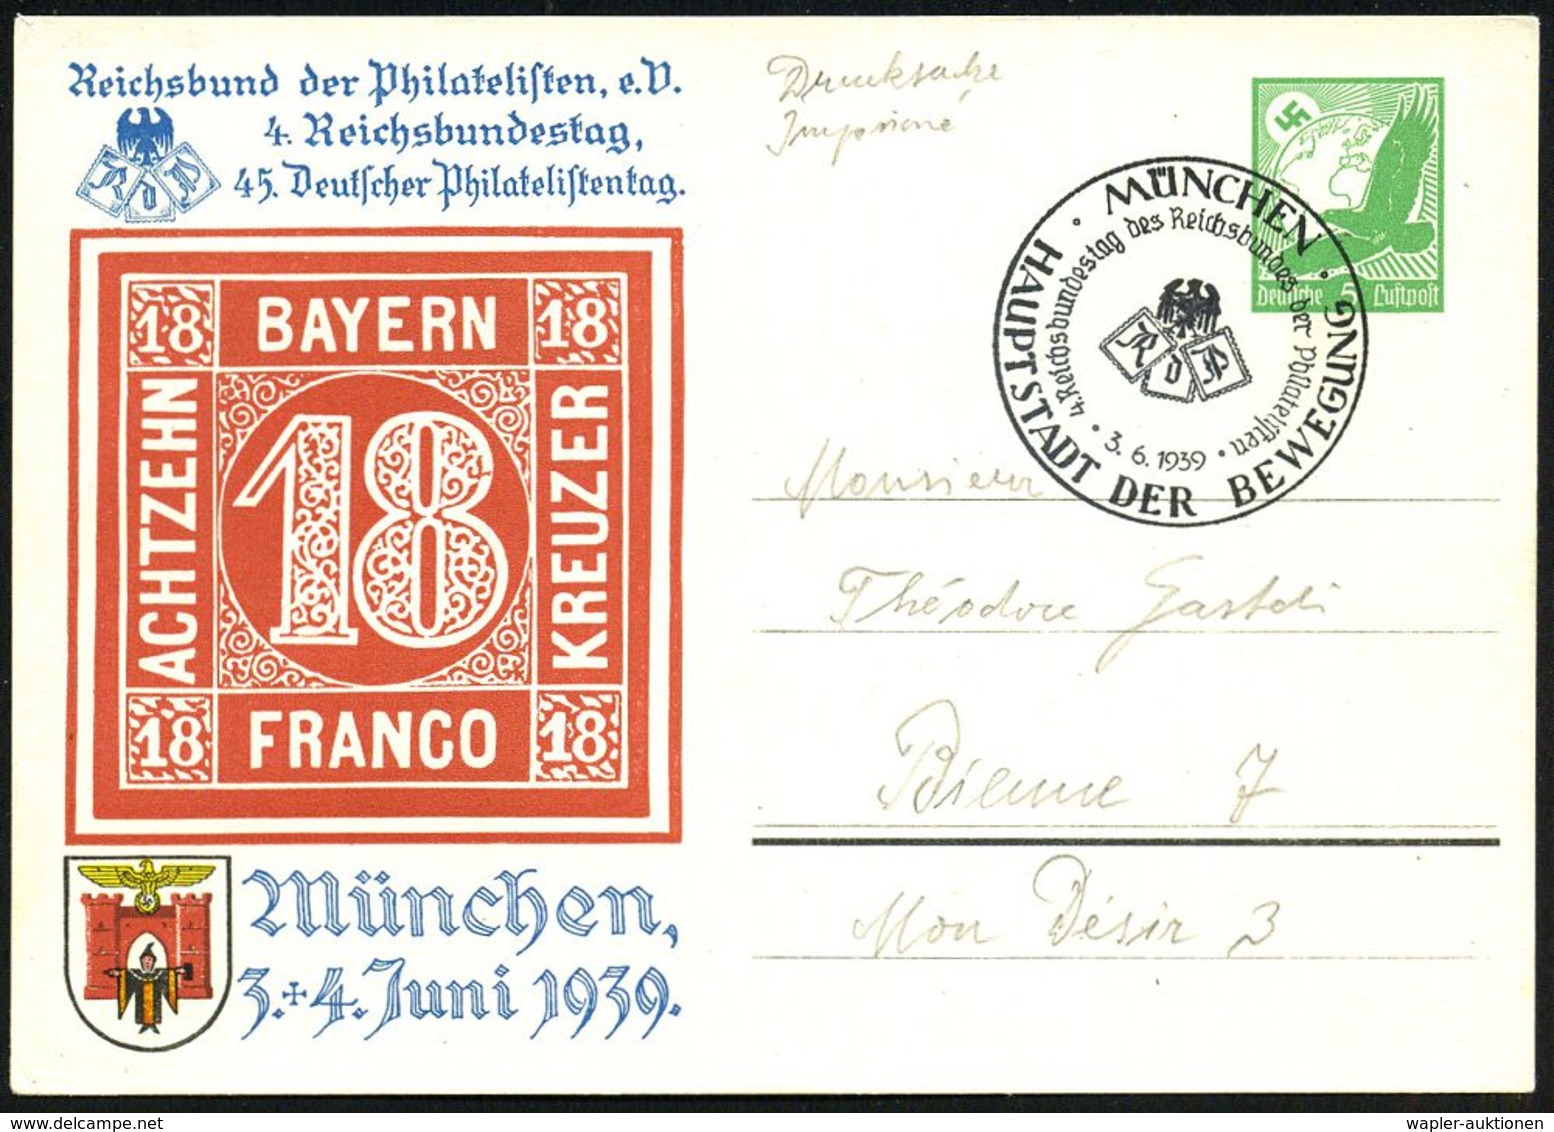 MÜNCHEN/ HDB/ 4.Reichsbundestag Des Reichsbundes Der Philatelisten 1939 (3.6.) SSt Auf PP 5 Pf. Adler, Grün: 4. Reichsbu - Briefmarkenausstellungen